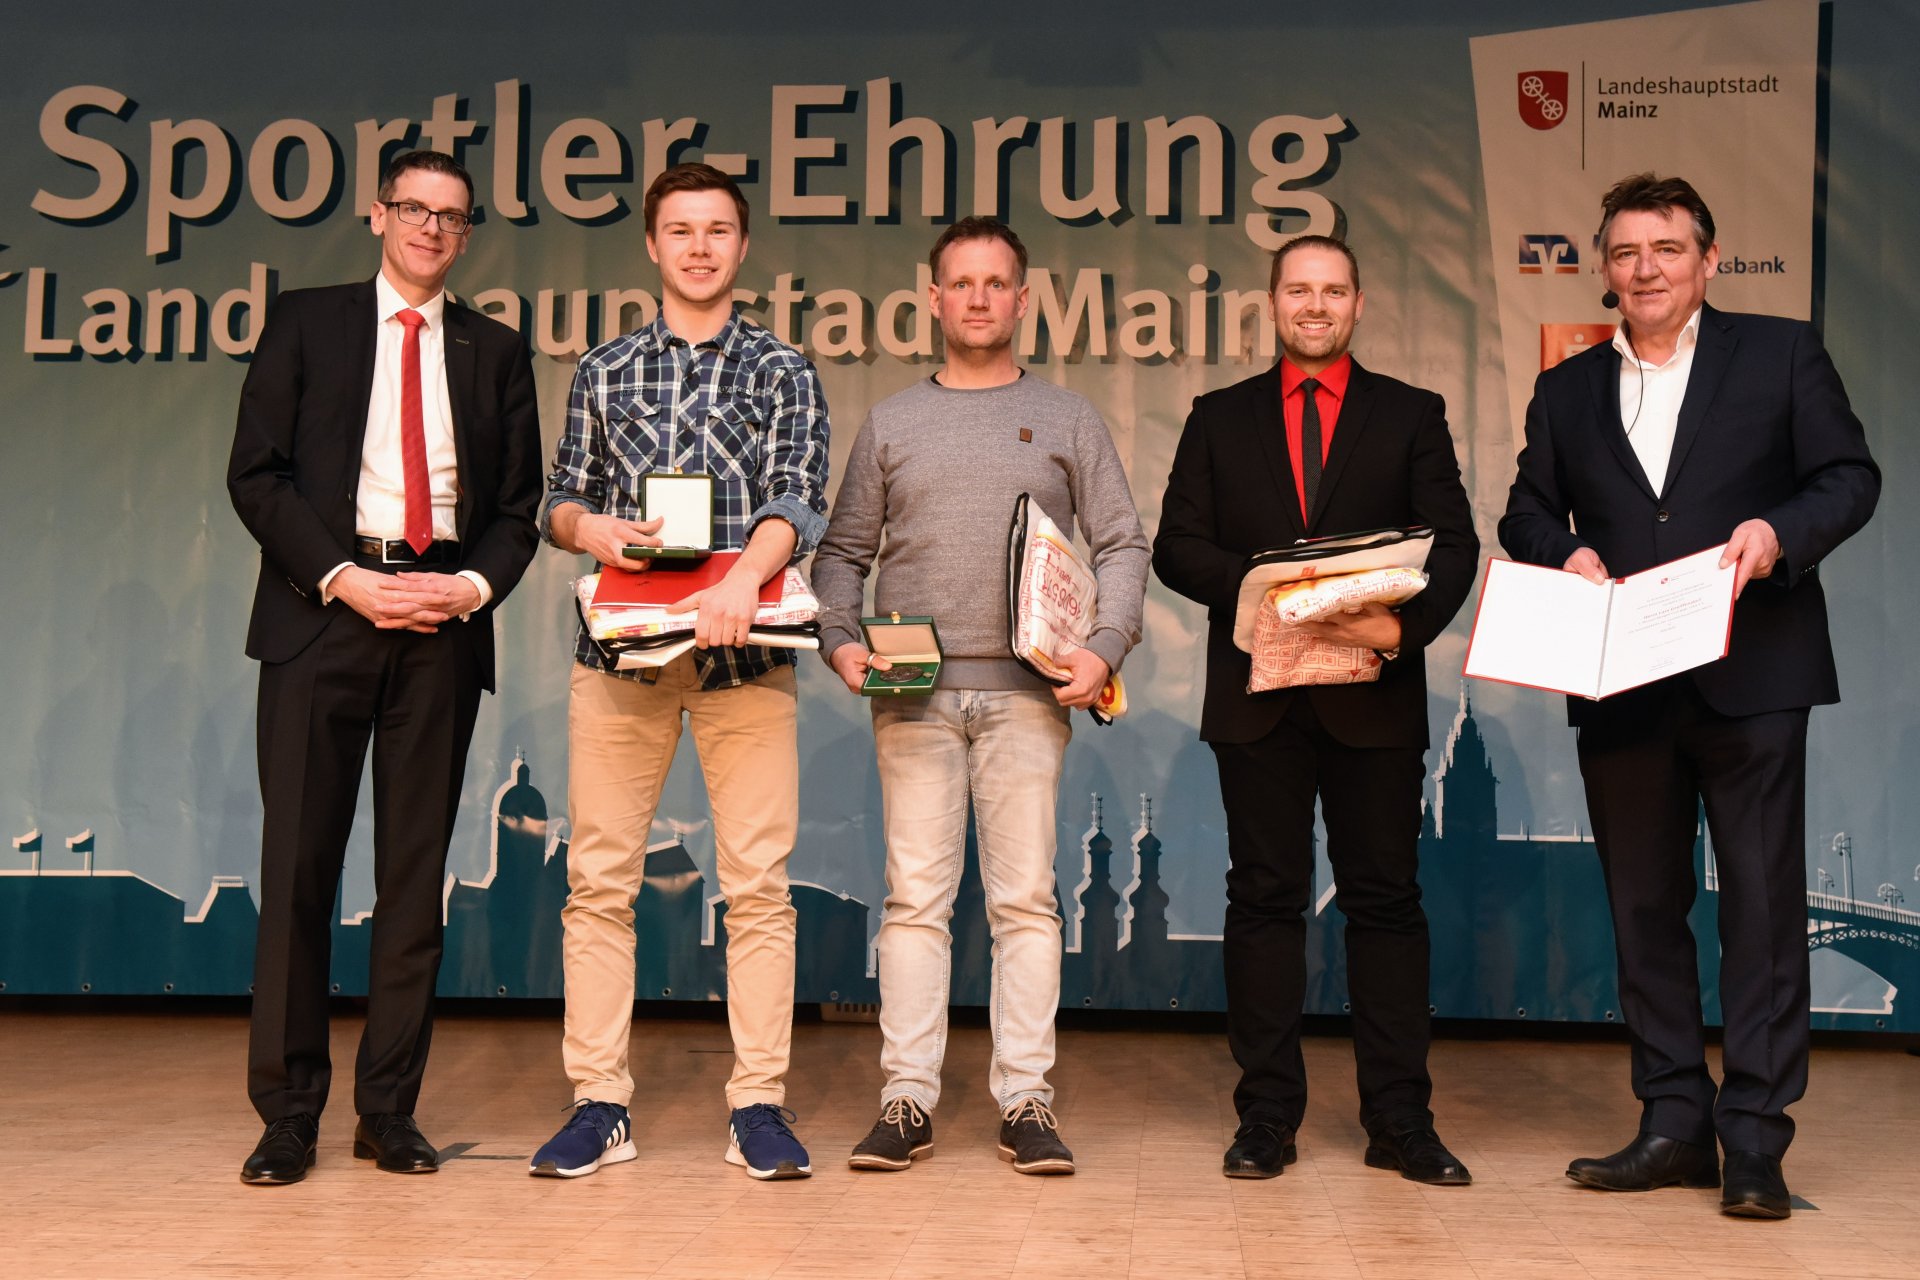 Nach 22 Jahren wurden die Minigolf-Männer des MGC Mainz wieder Deutscher Mannschaftsmeister. Jetzt freuen sich unter anderem Lukas Neumann, Lars Greiffendorf und Marcel Noack auf die DM 2018, die Anfang Juli im Hartenbergpark ausgetragen wird.